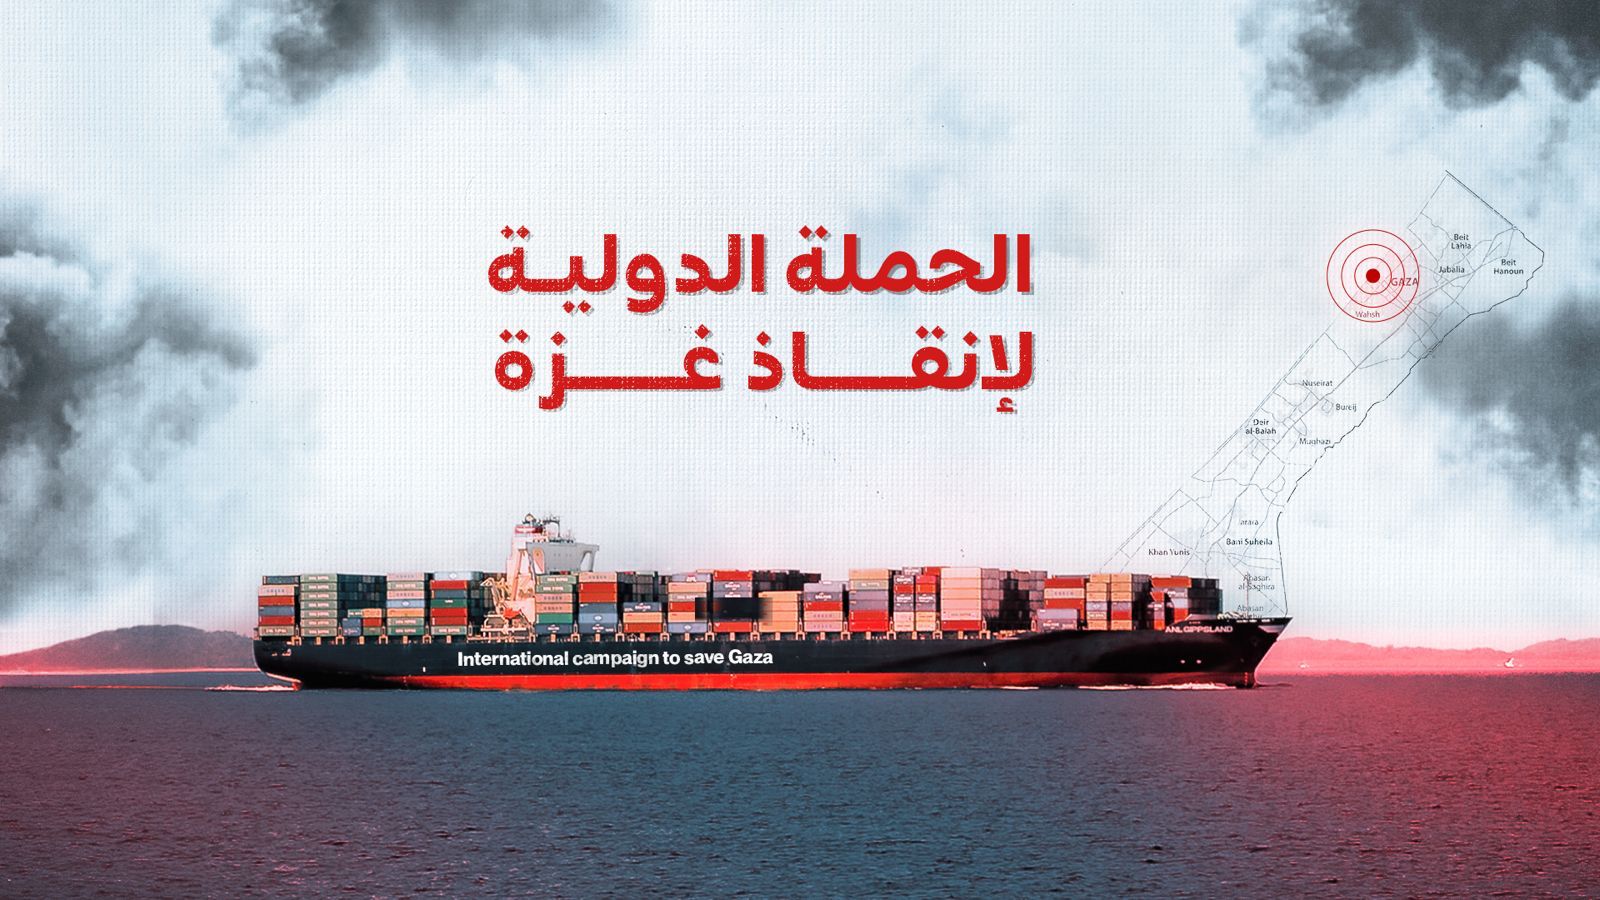 ليبيا.. انطلاق حملة شعبية لتسيير سفينة مساعدات لغزة